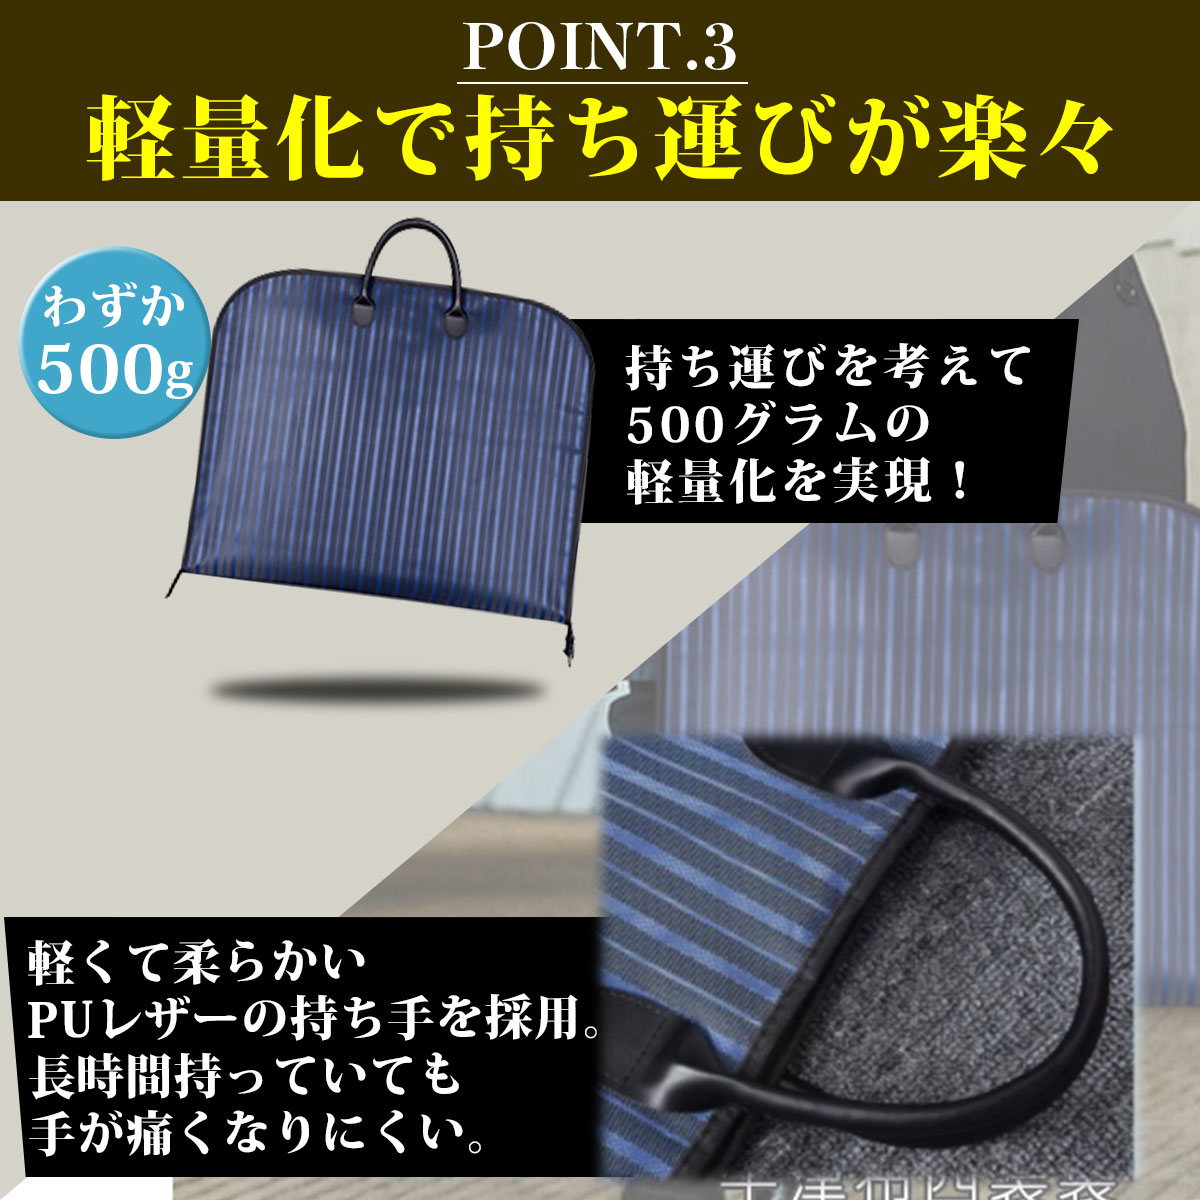  сумка для одежды костюм покрытие перевозка ga- men to кейс костюм сумка Tailor сумка мужской костюм inserting женский 